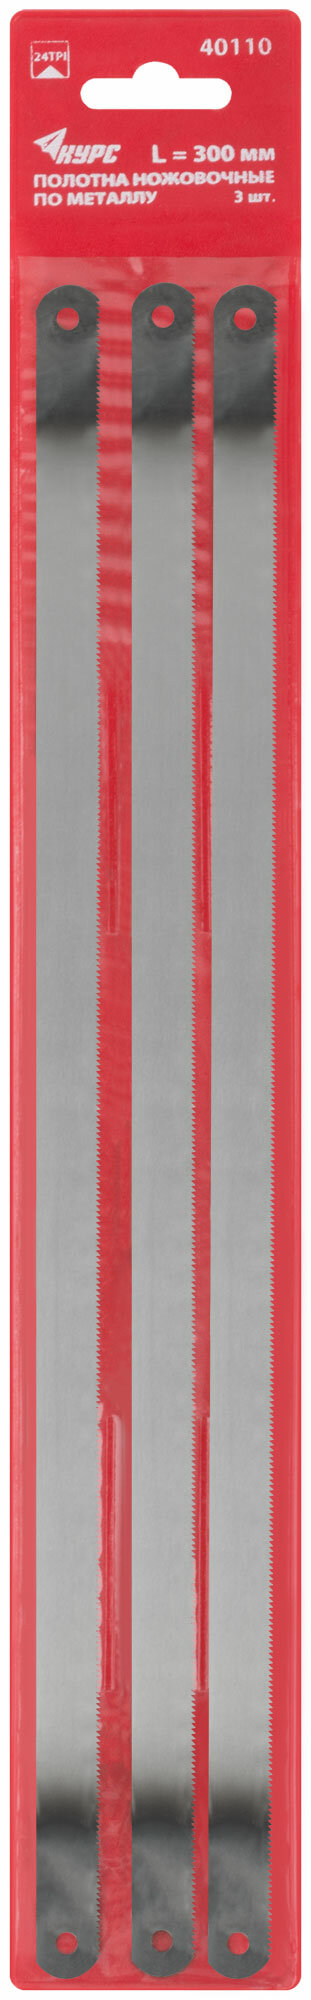 Полотна ножовочные по металлу 300х12 мм, инструментальная сталь, 3 шт. ( 24 ТPI ), ПВХ конверт